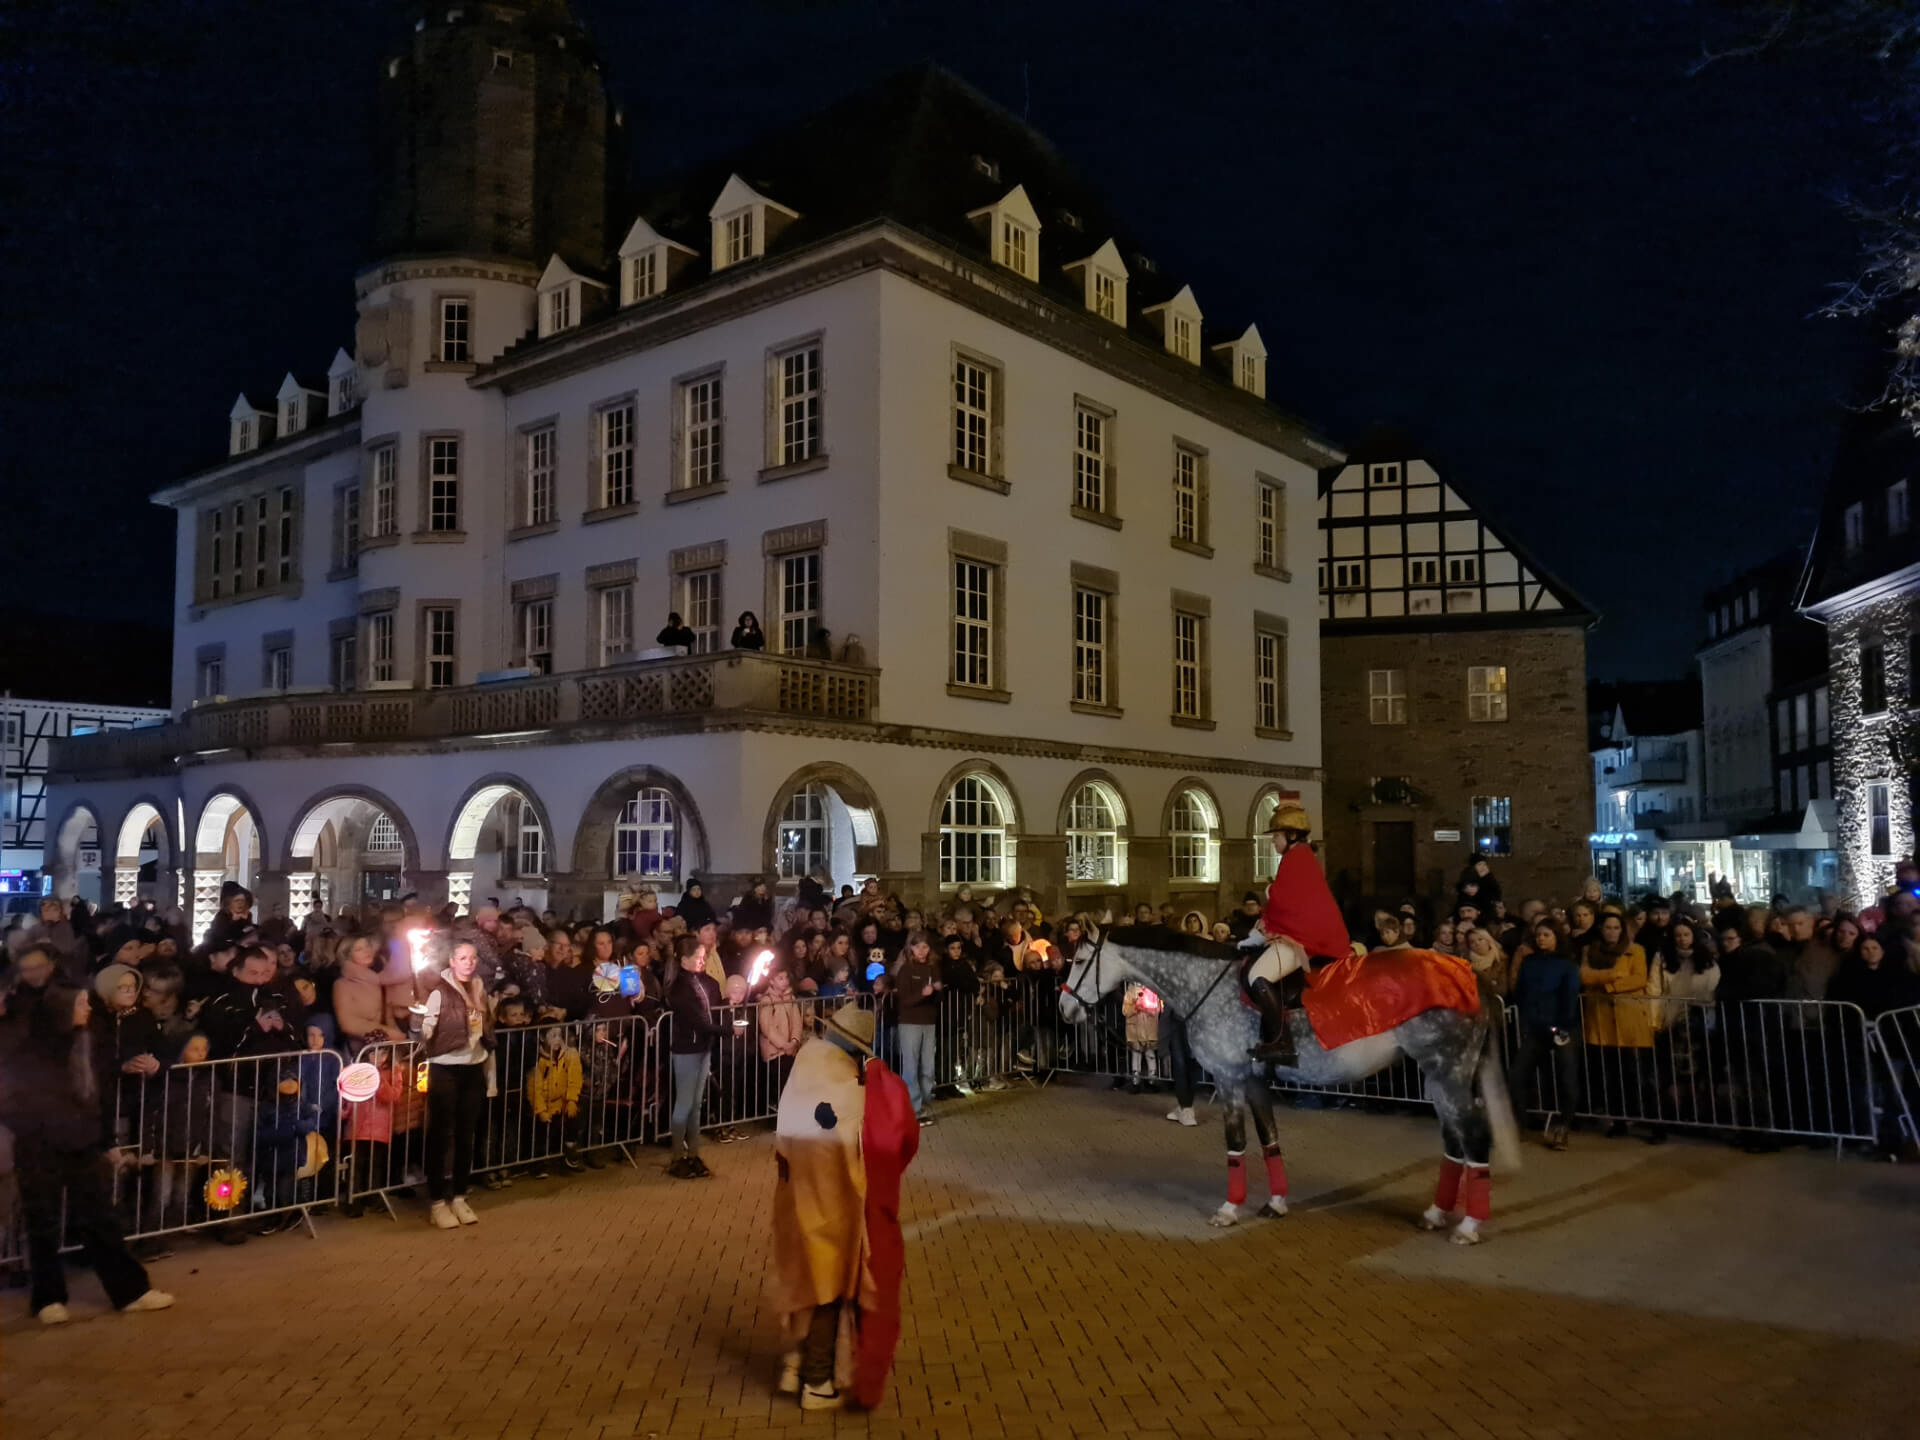 St. Martin reitet mit Laternen und Gesang durch die Mendener Altstadt